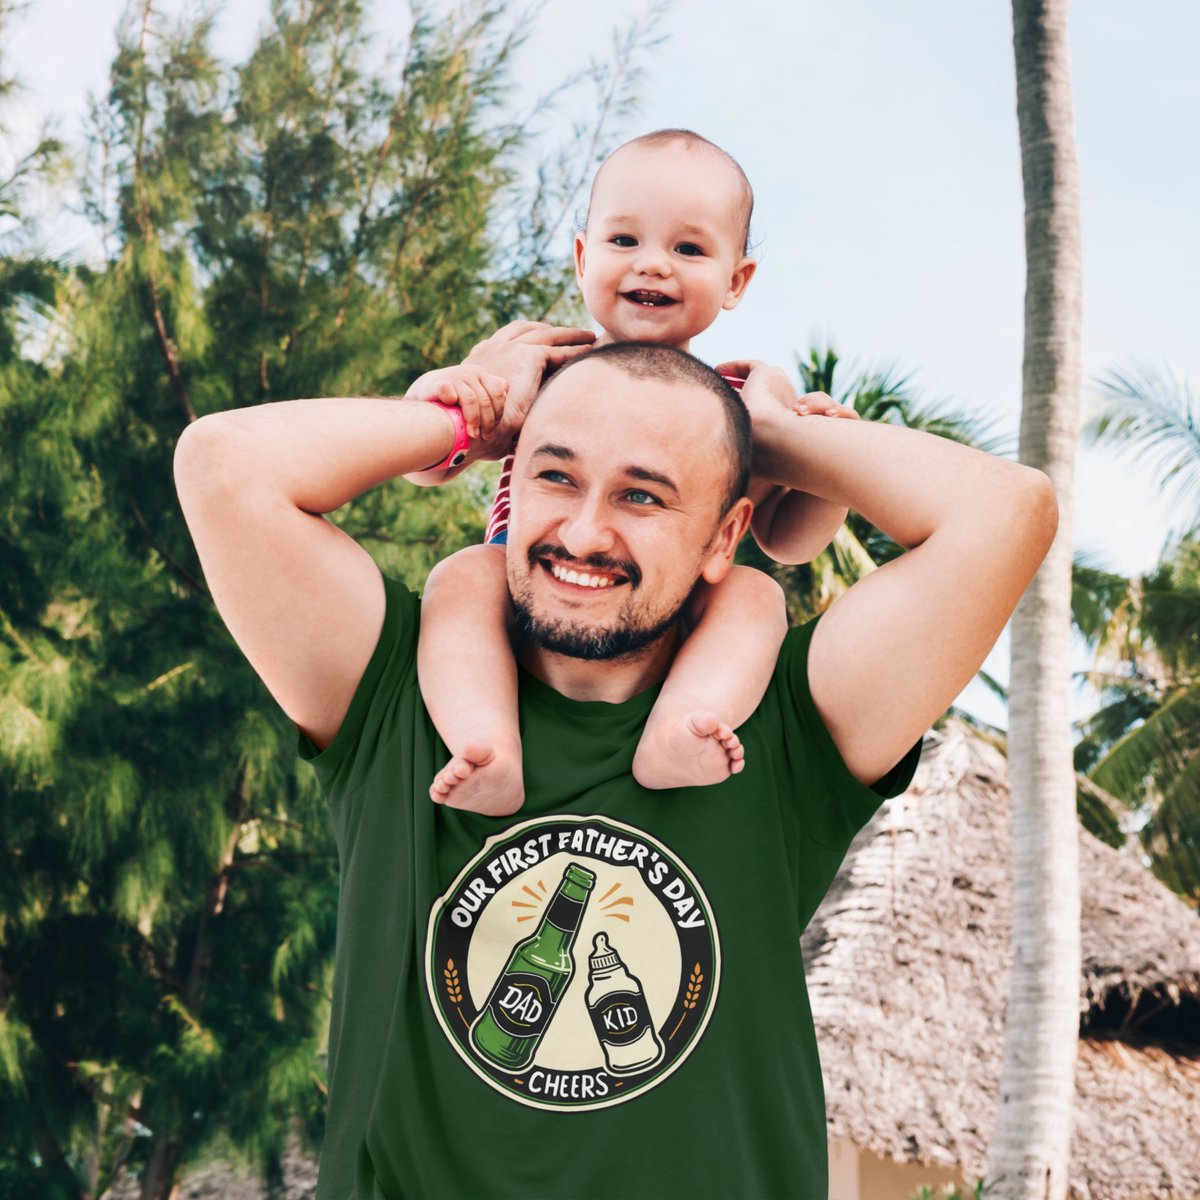 First Father’s Day cute father and kid T-Shirt zazzle.com/z/8kaqw9qx?rf=… via @zazzle
#fathersday #firstfathersday #dad #dadjokes #zazzlemade